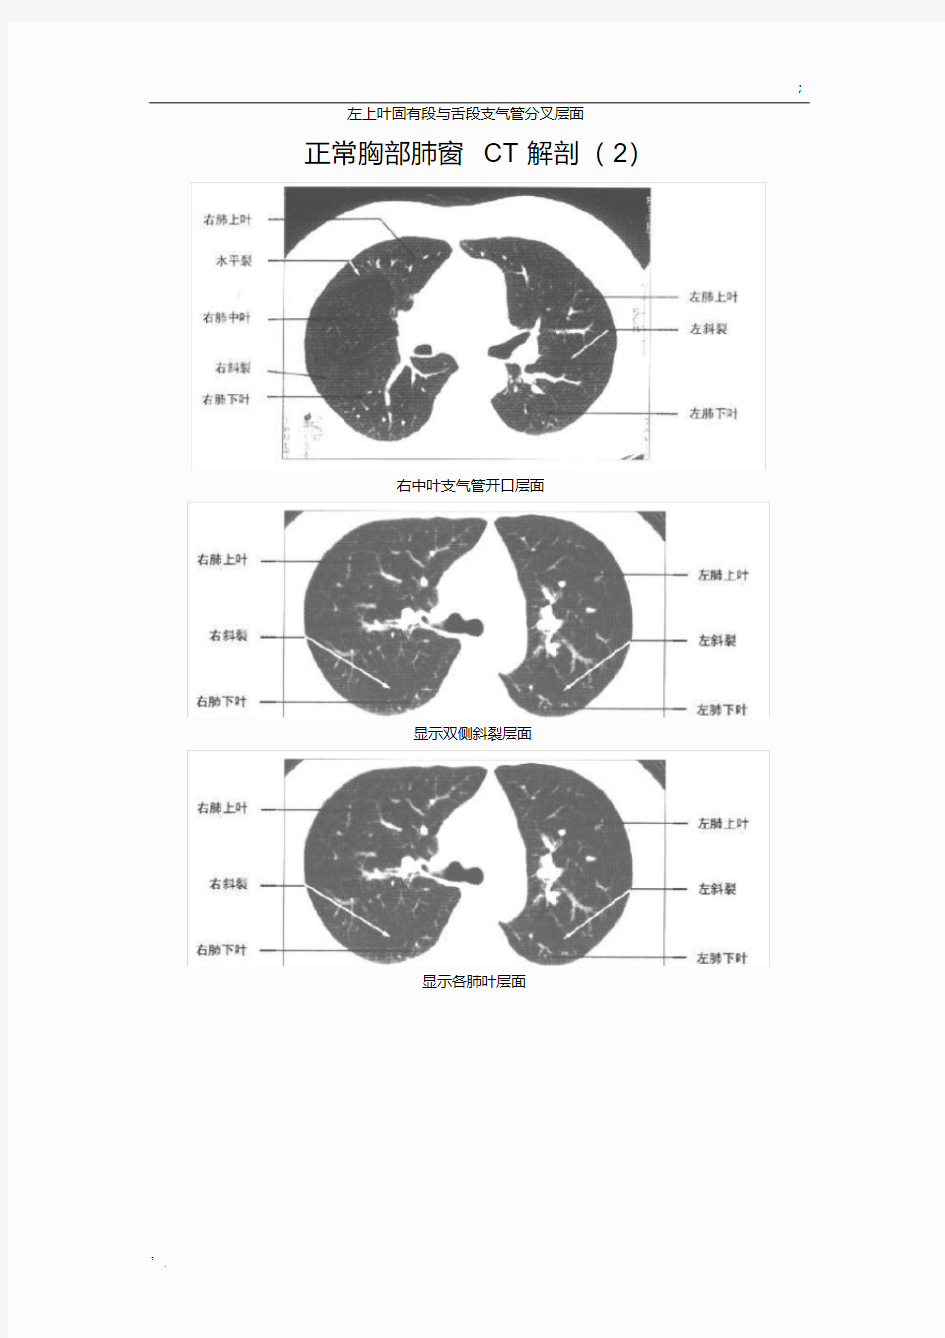 正常胸部CT解剖(肺窗和纵隔窗)